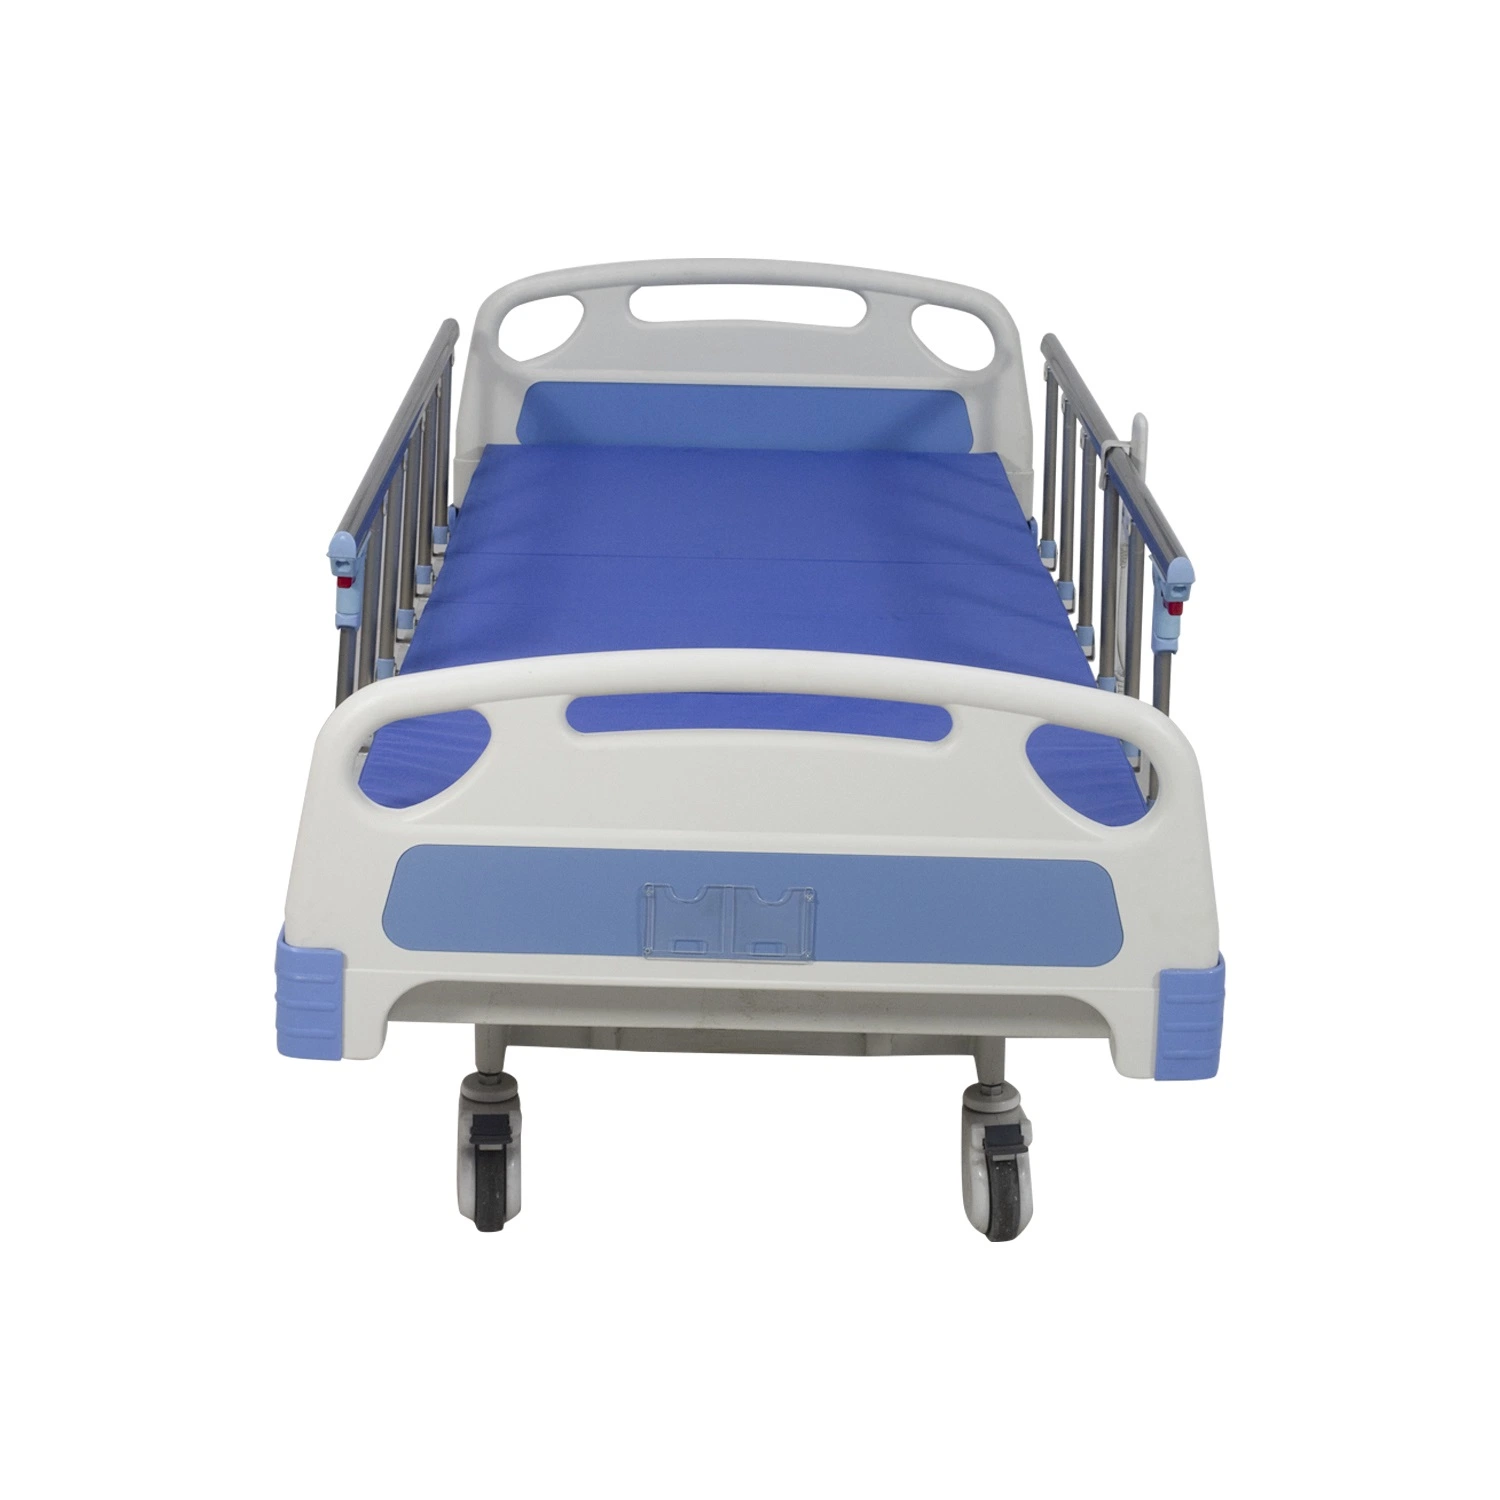 Rh-Ad428 5-função elétrica hospitalar motorizada do aço a postura de cama cama de Enfermagem ajustável com grades de alumínio